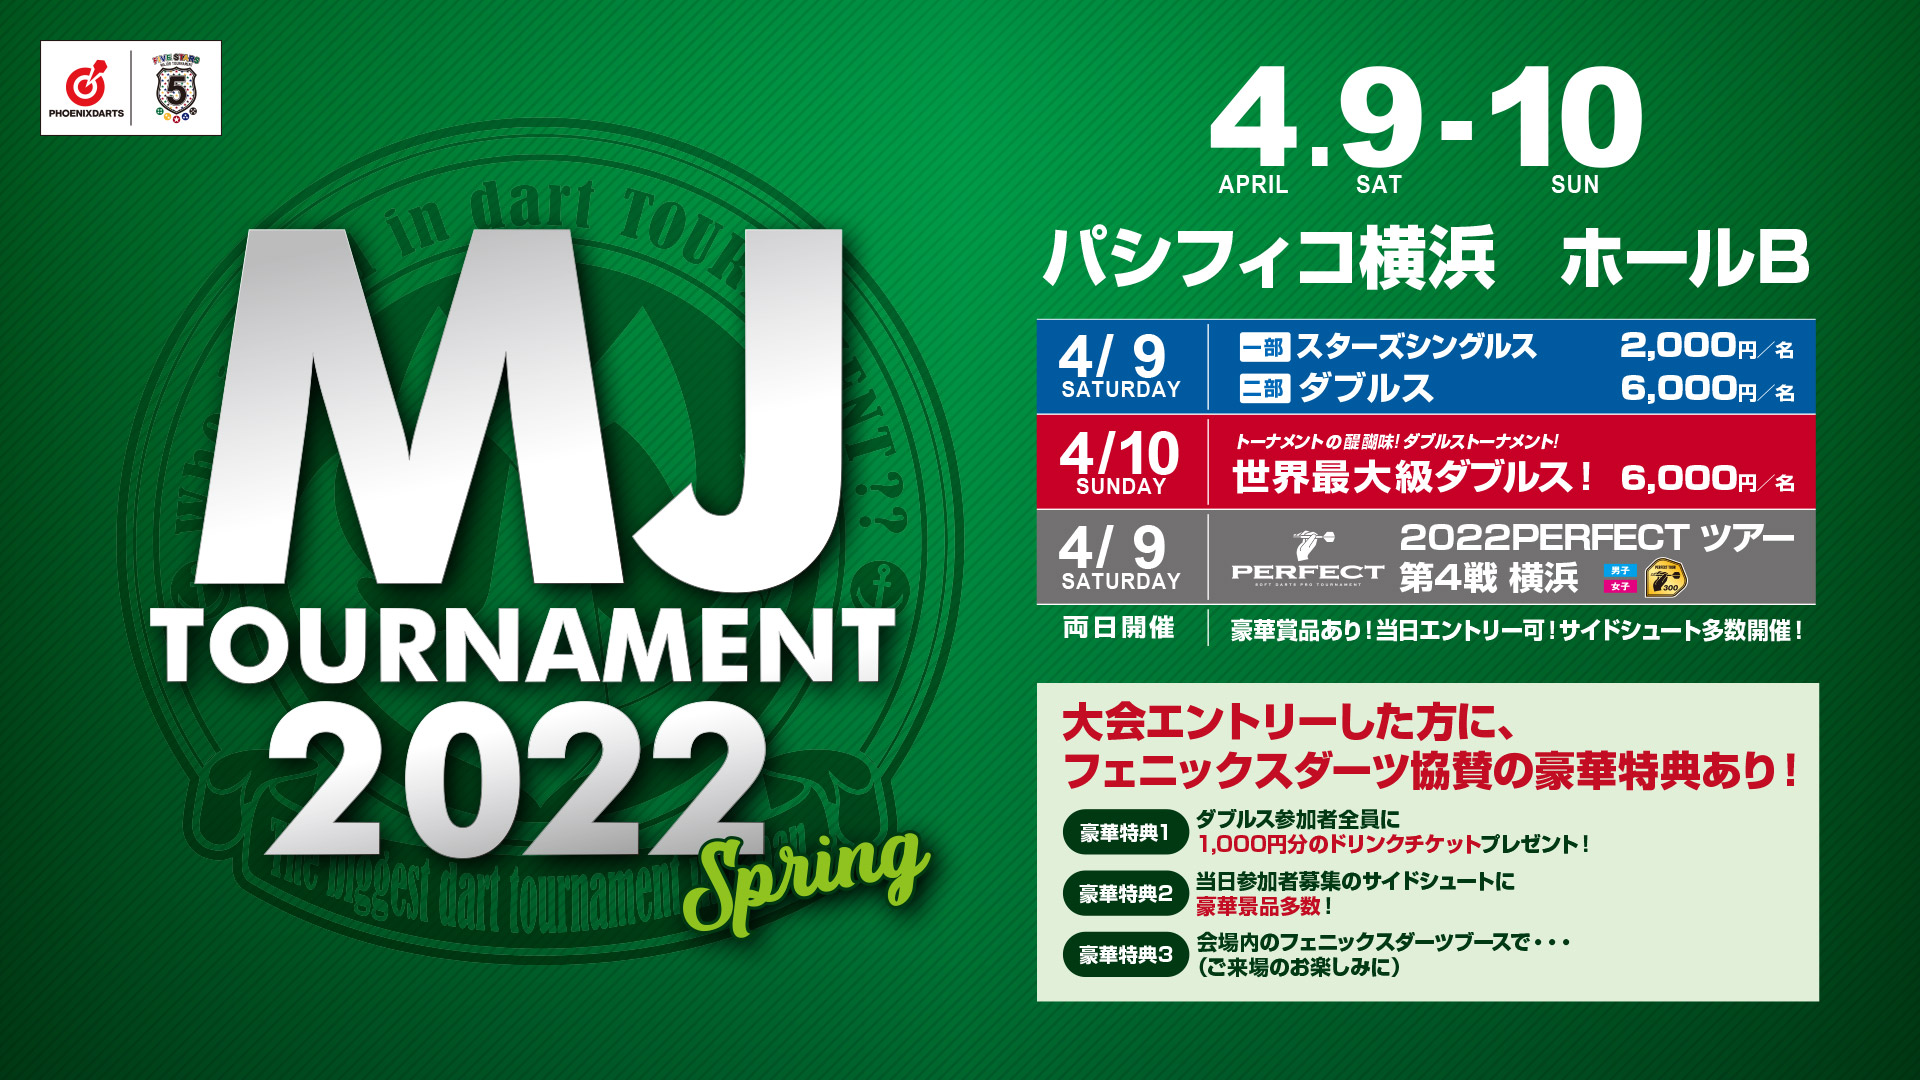 日本最大級ダーツトーナメント!「MJ'22 SPRING」2022年4月9日(土)・10日(日)パシフィコ横浜にて開催。